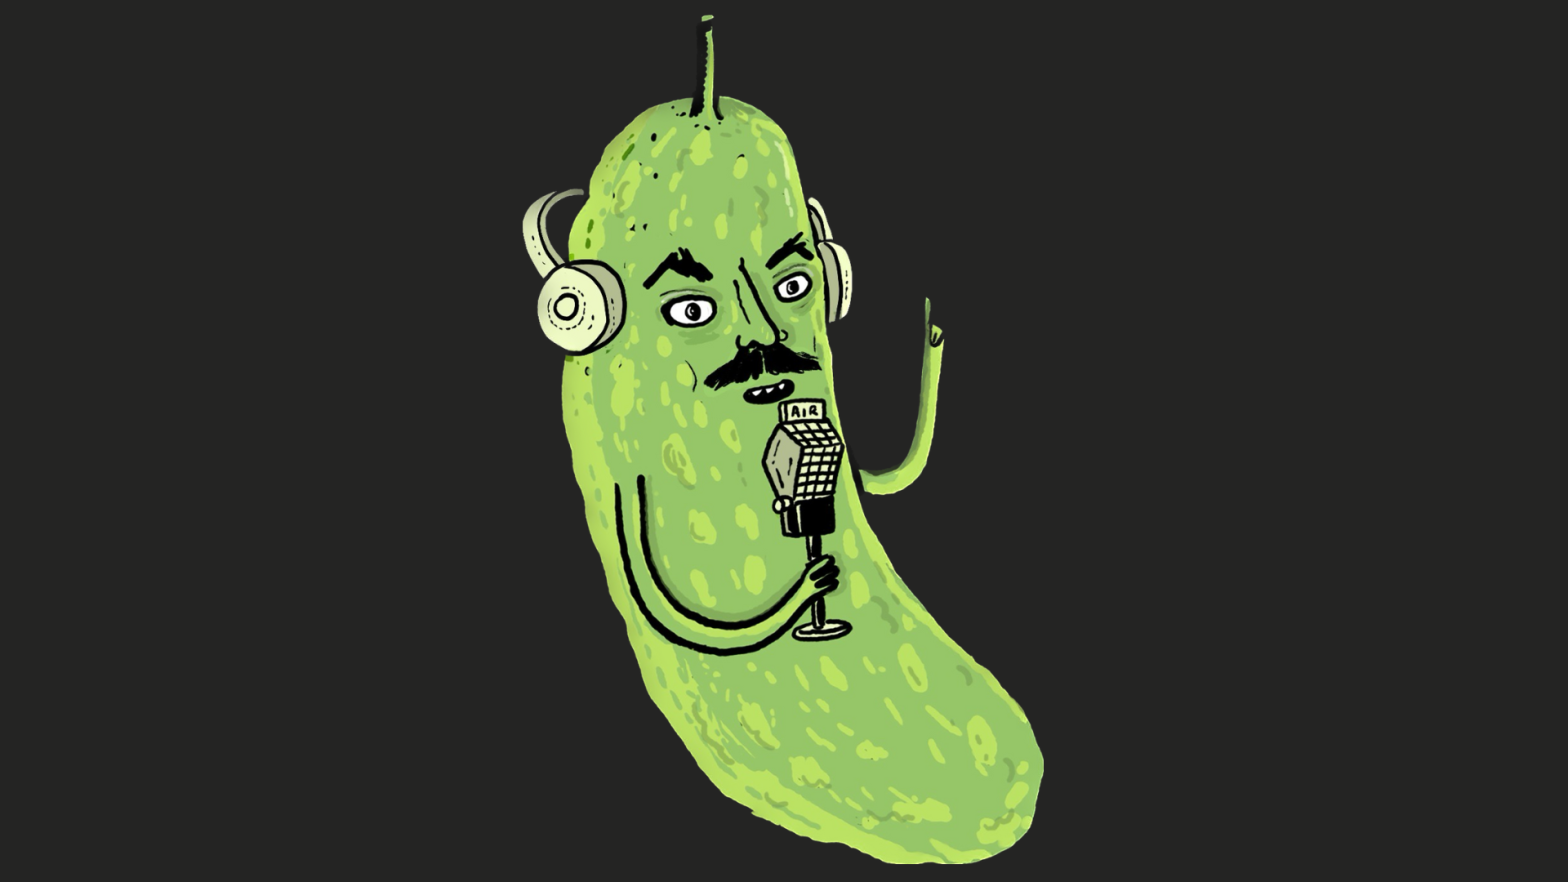 Image: Richard’s Famous Food Podcast logo